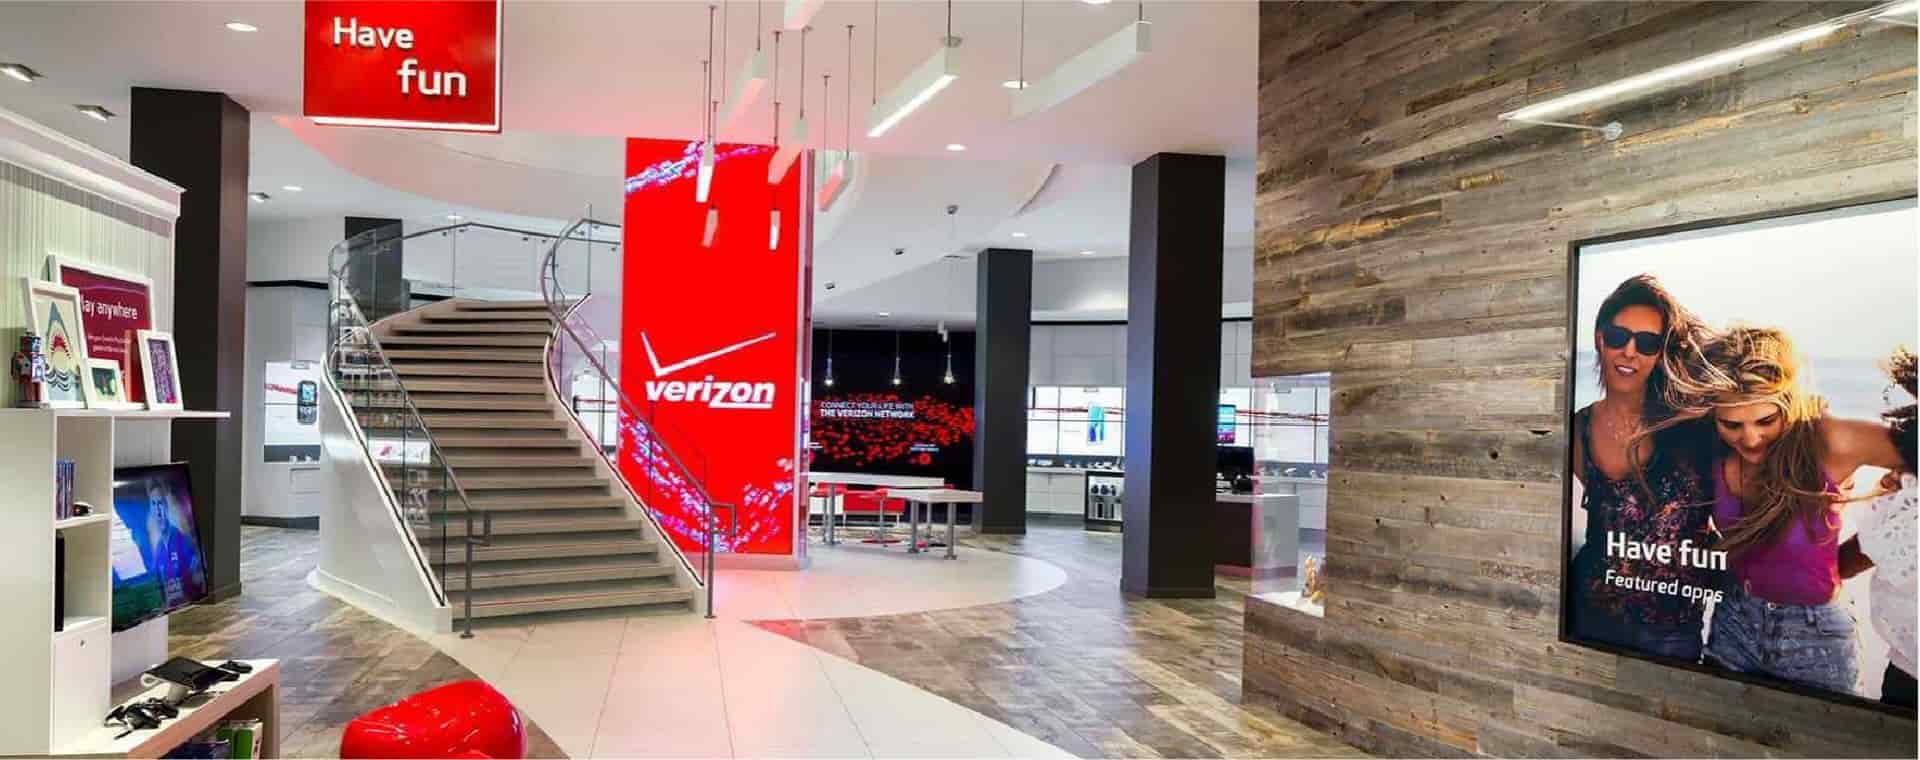 Verizon storefront